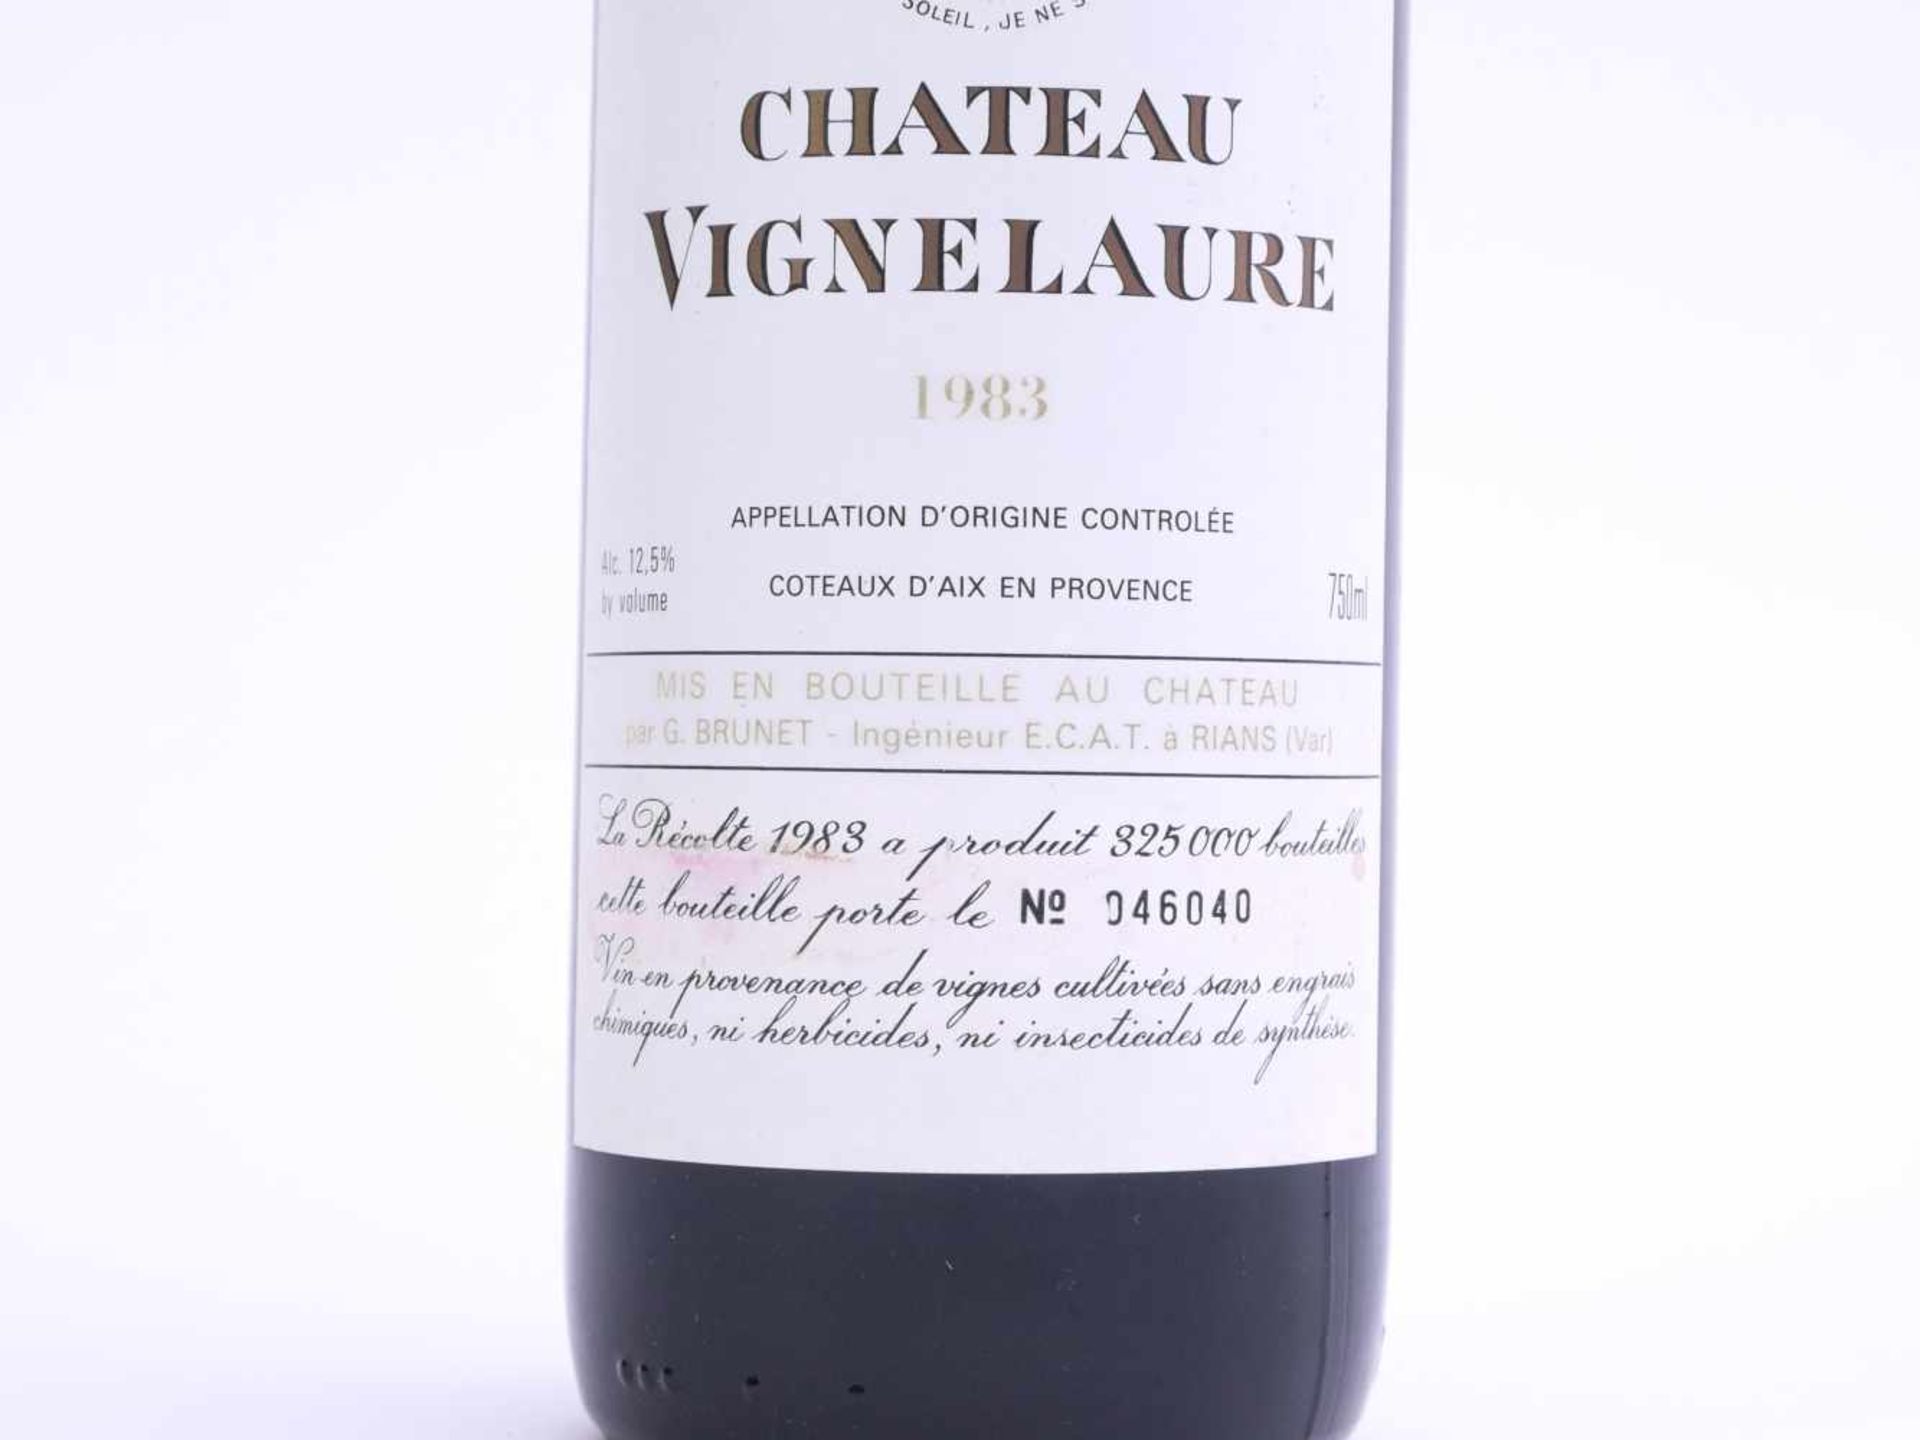 Flasche Rotwein Chateau Vignelaure 1983Nummeriertes Exemplar 046040 von 325000 gesamt abgefüllten - Image 3 of 3